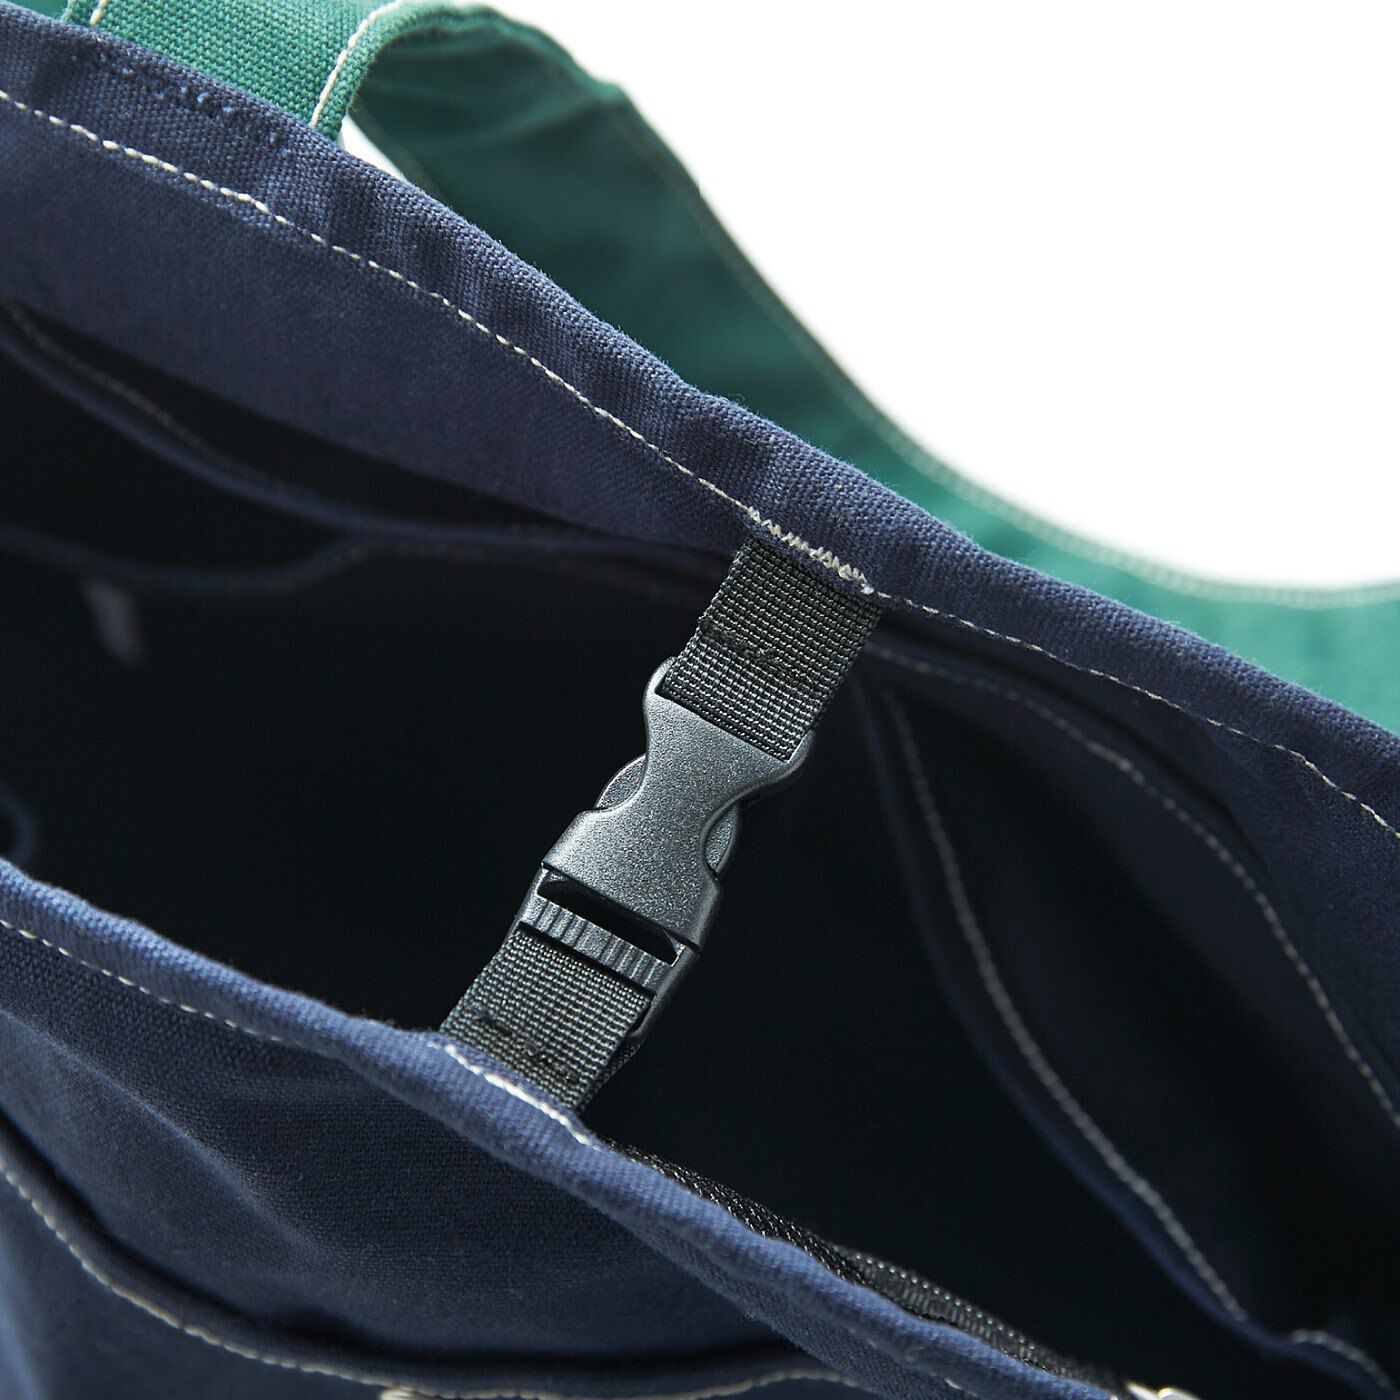 USEDo|古着屋さんで見つけたようなたっぷり収納キャンバスバッグの会|留め具で閉じられる仕様なので安心。